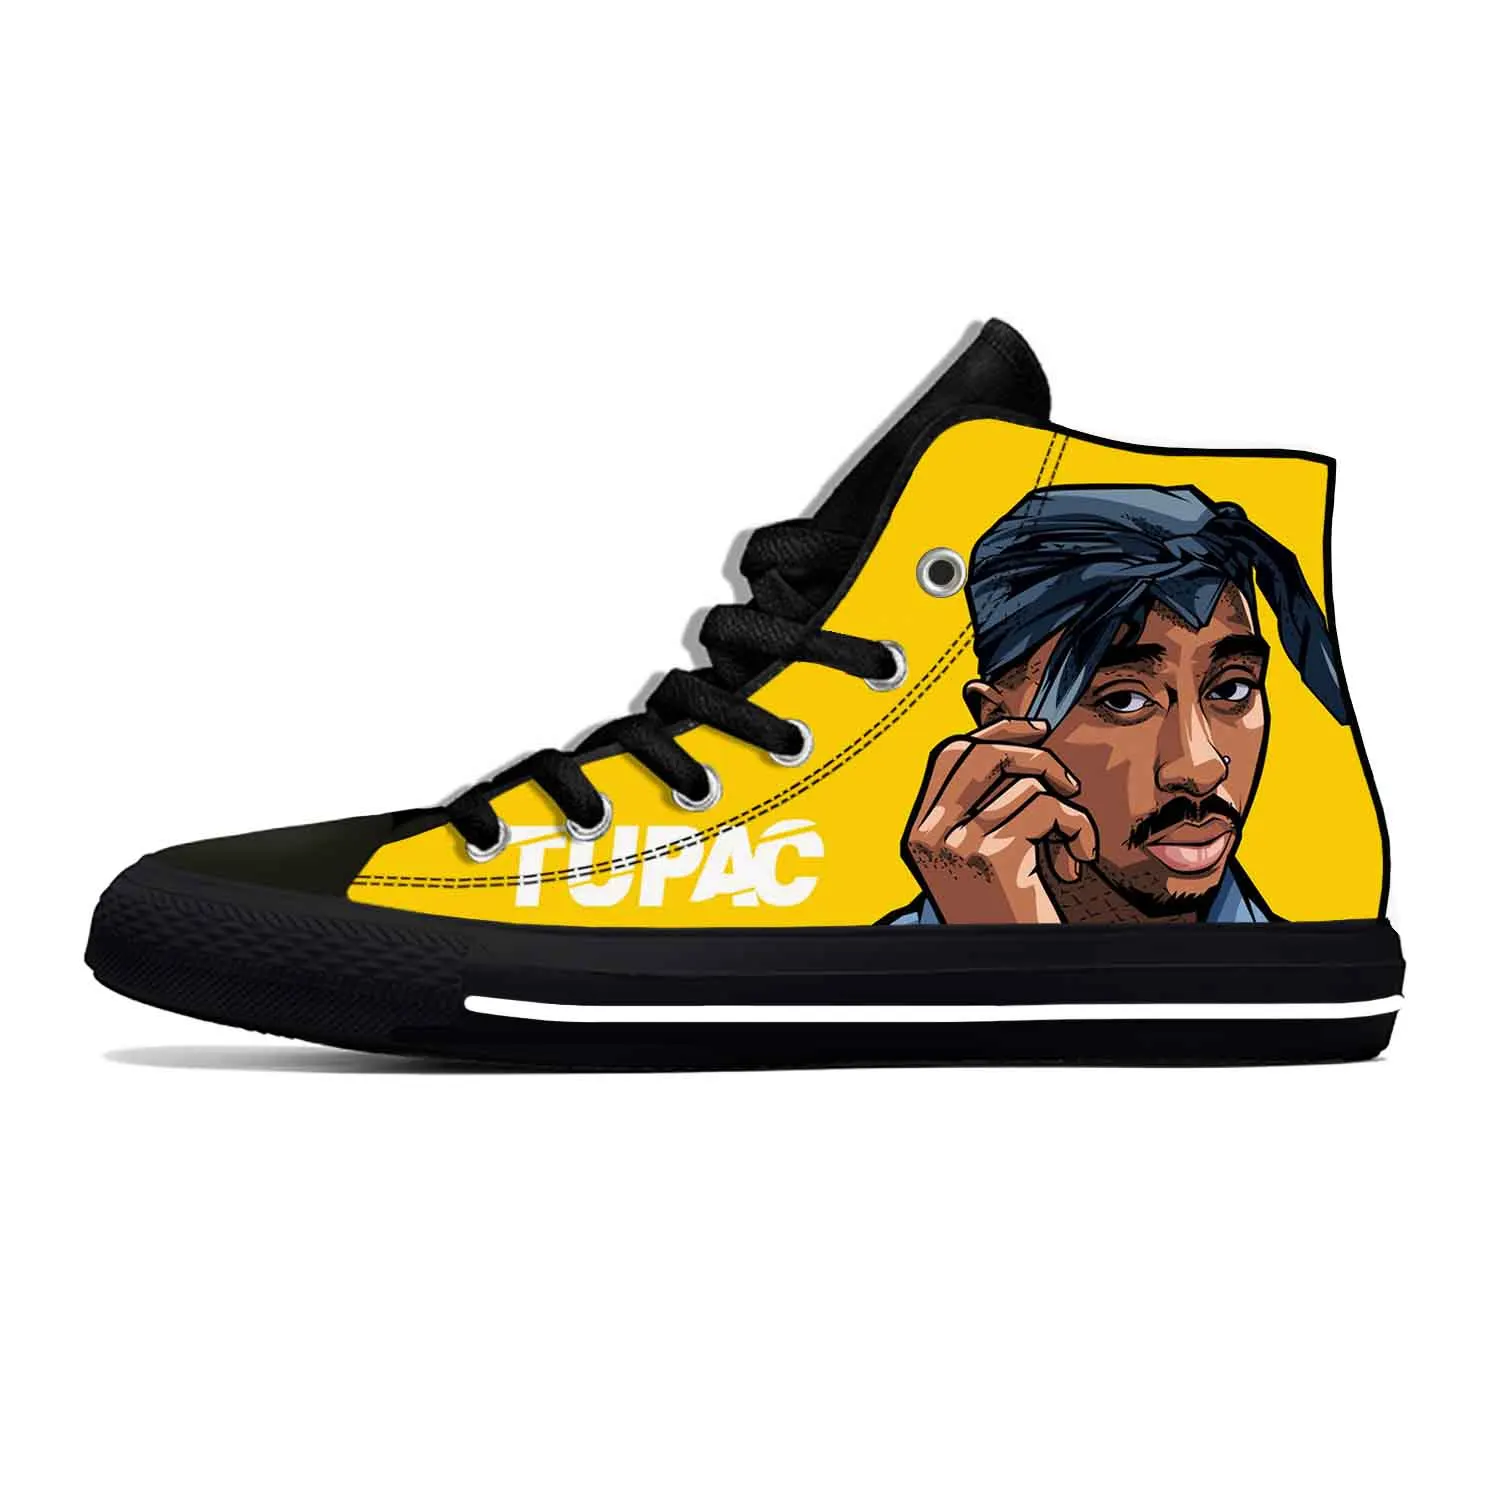 

Тупак хип-хоп рэп-Рэппер 2pac Makaveli музыкальная крутая Повседневная Тканевая обувь высокие Легкие дышащие кроссовки с 3D принтом для мужчин и женщин